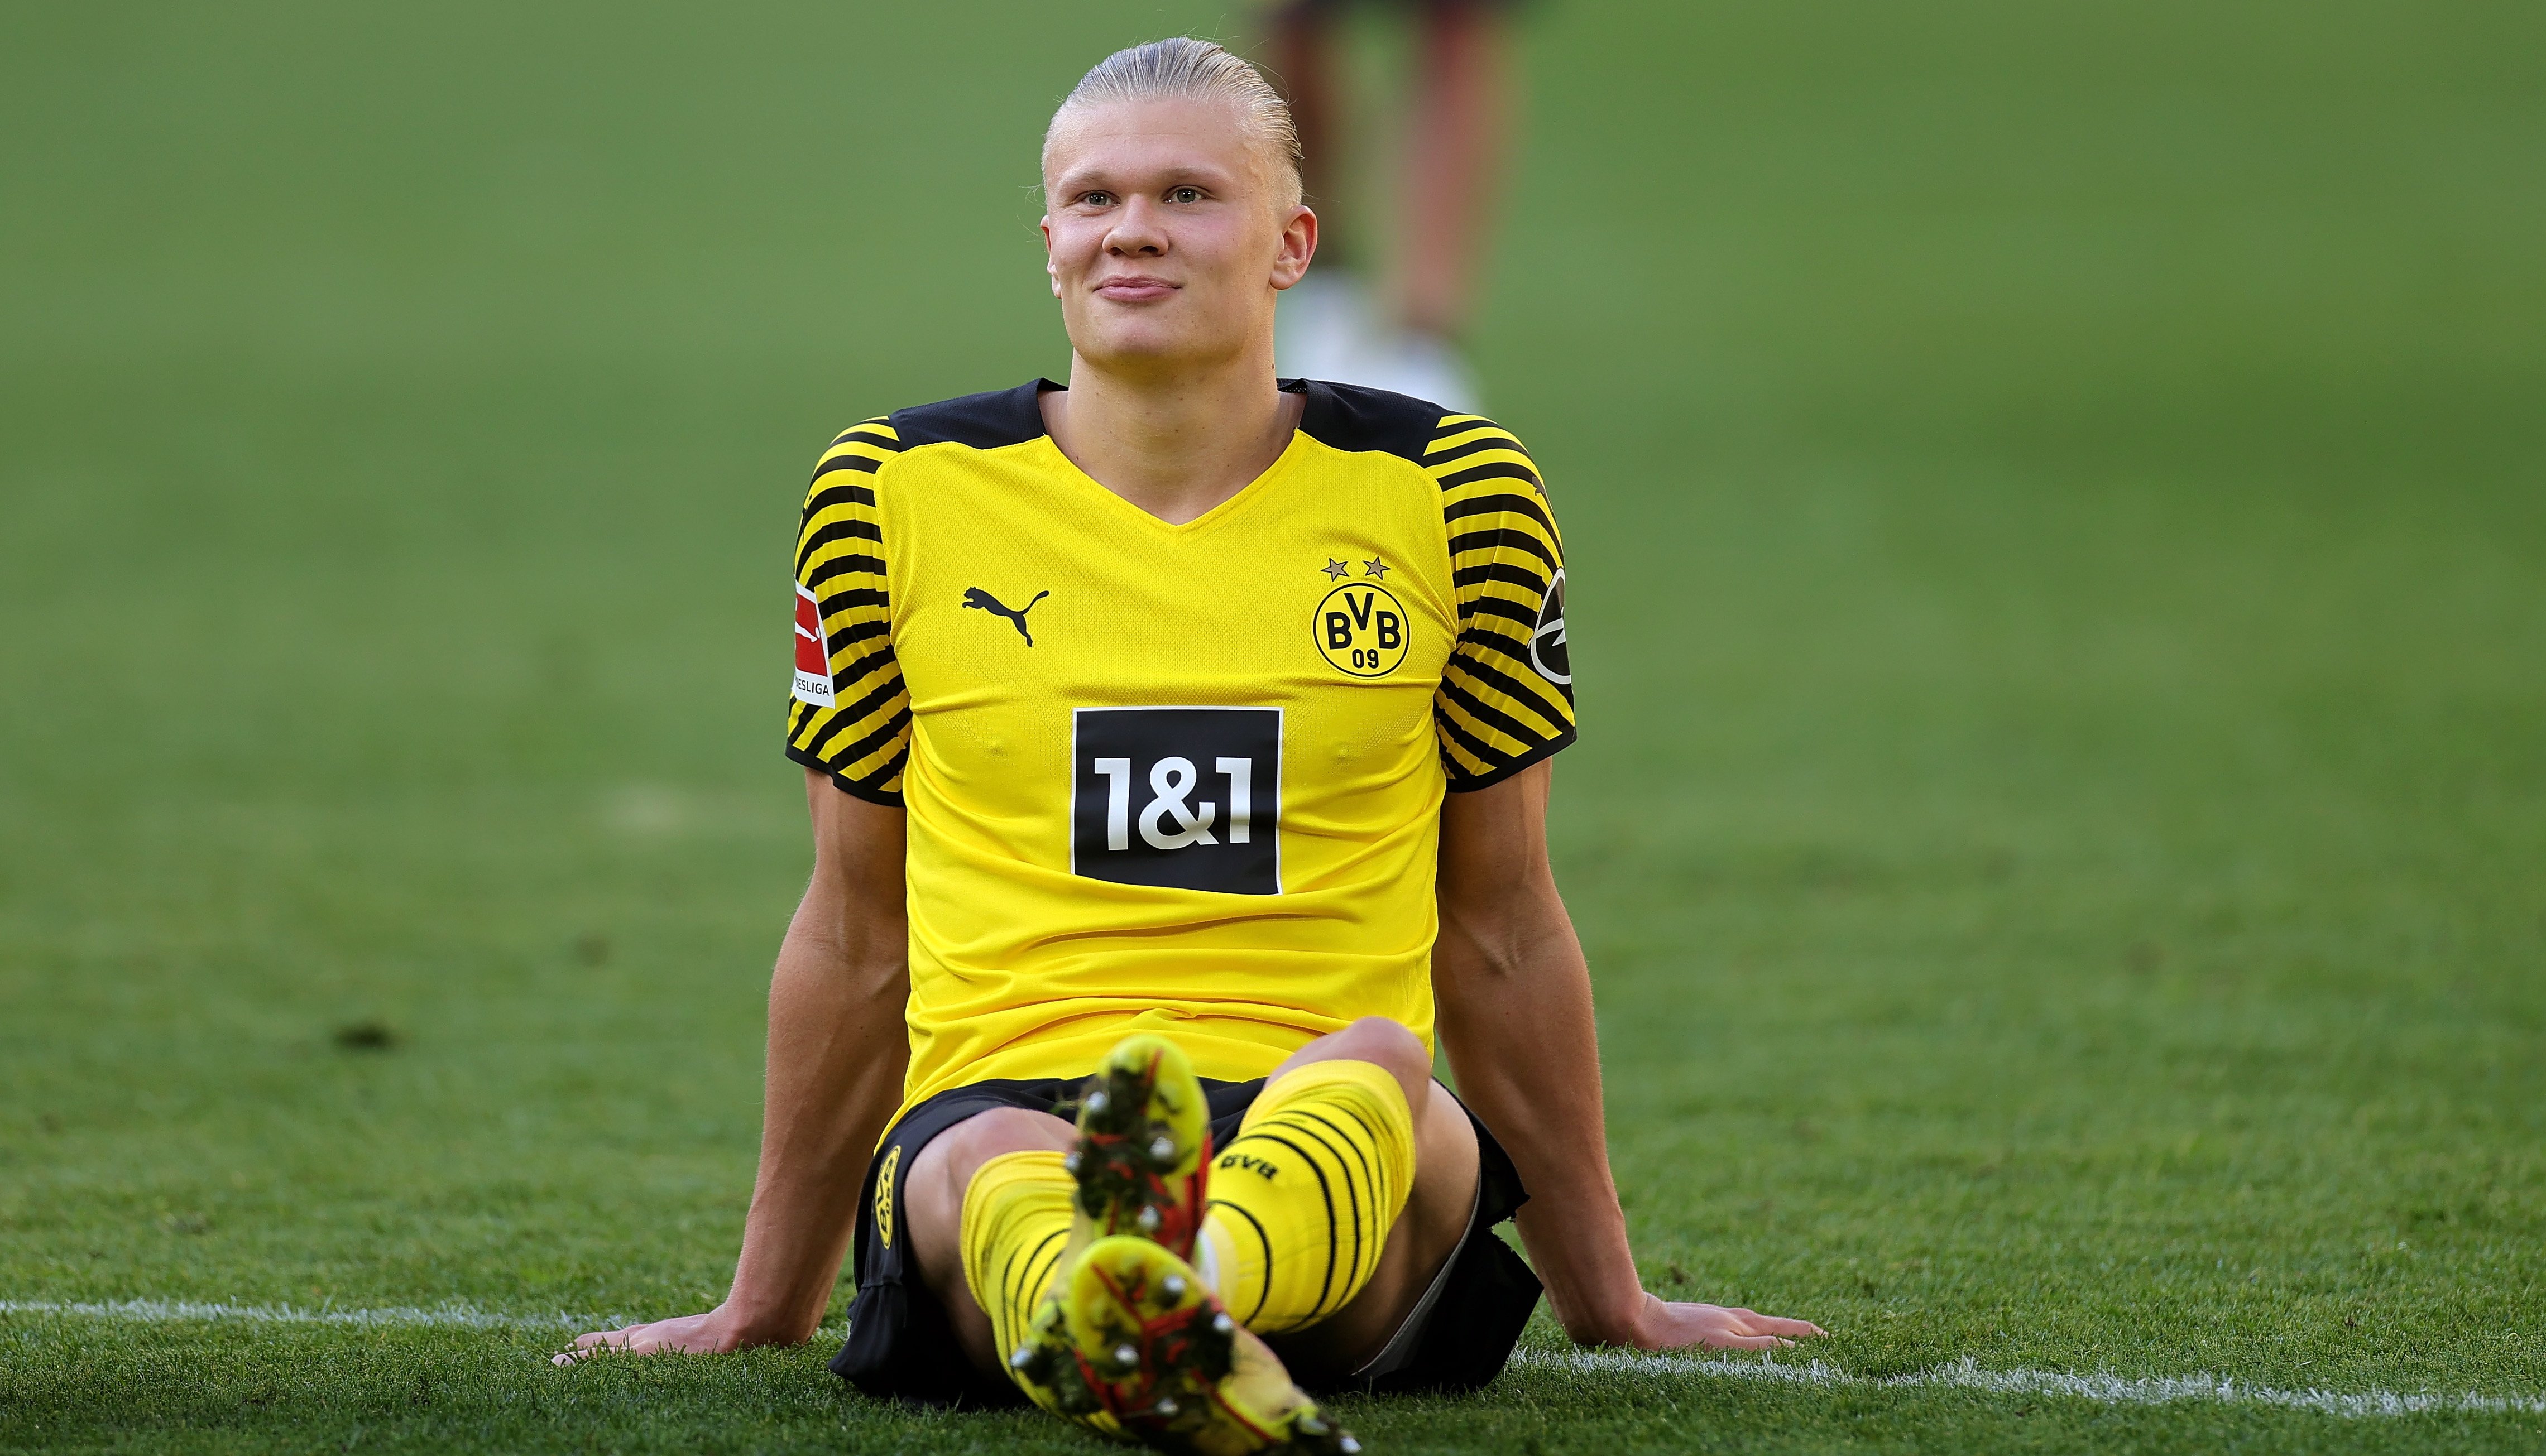 Haaland ja li ha comunicat al Borussia Dortmund en quin equip jugarà: la decisió està presa al 100%